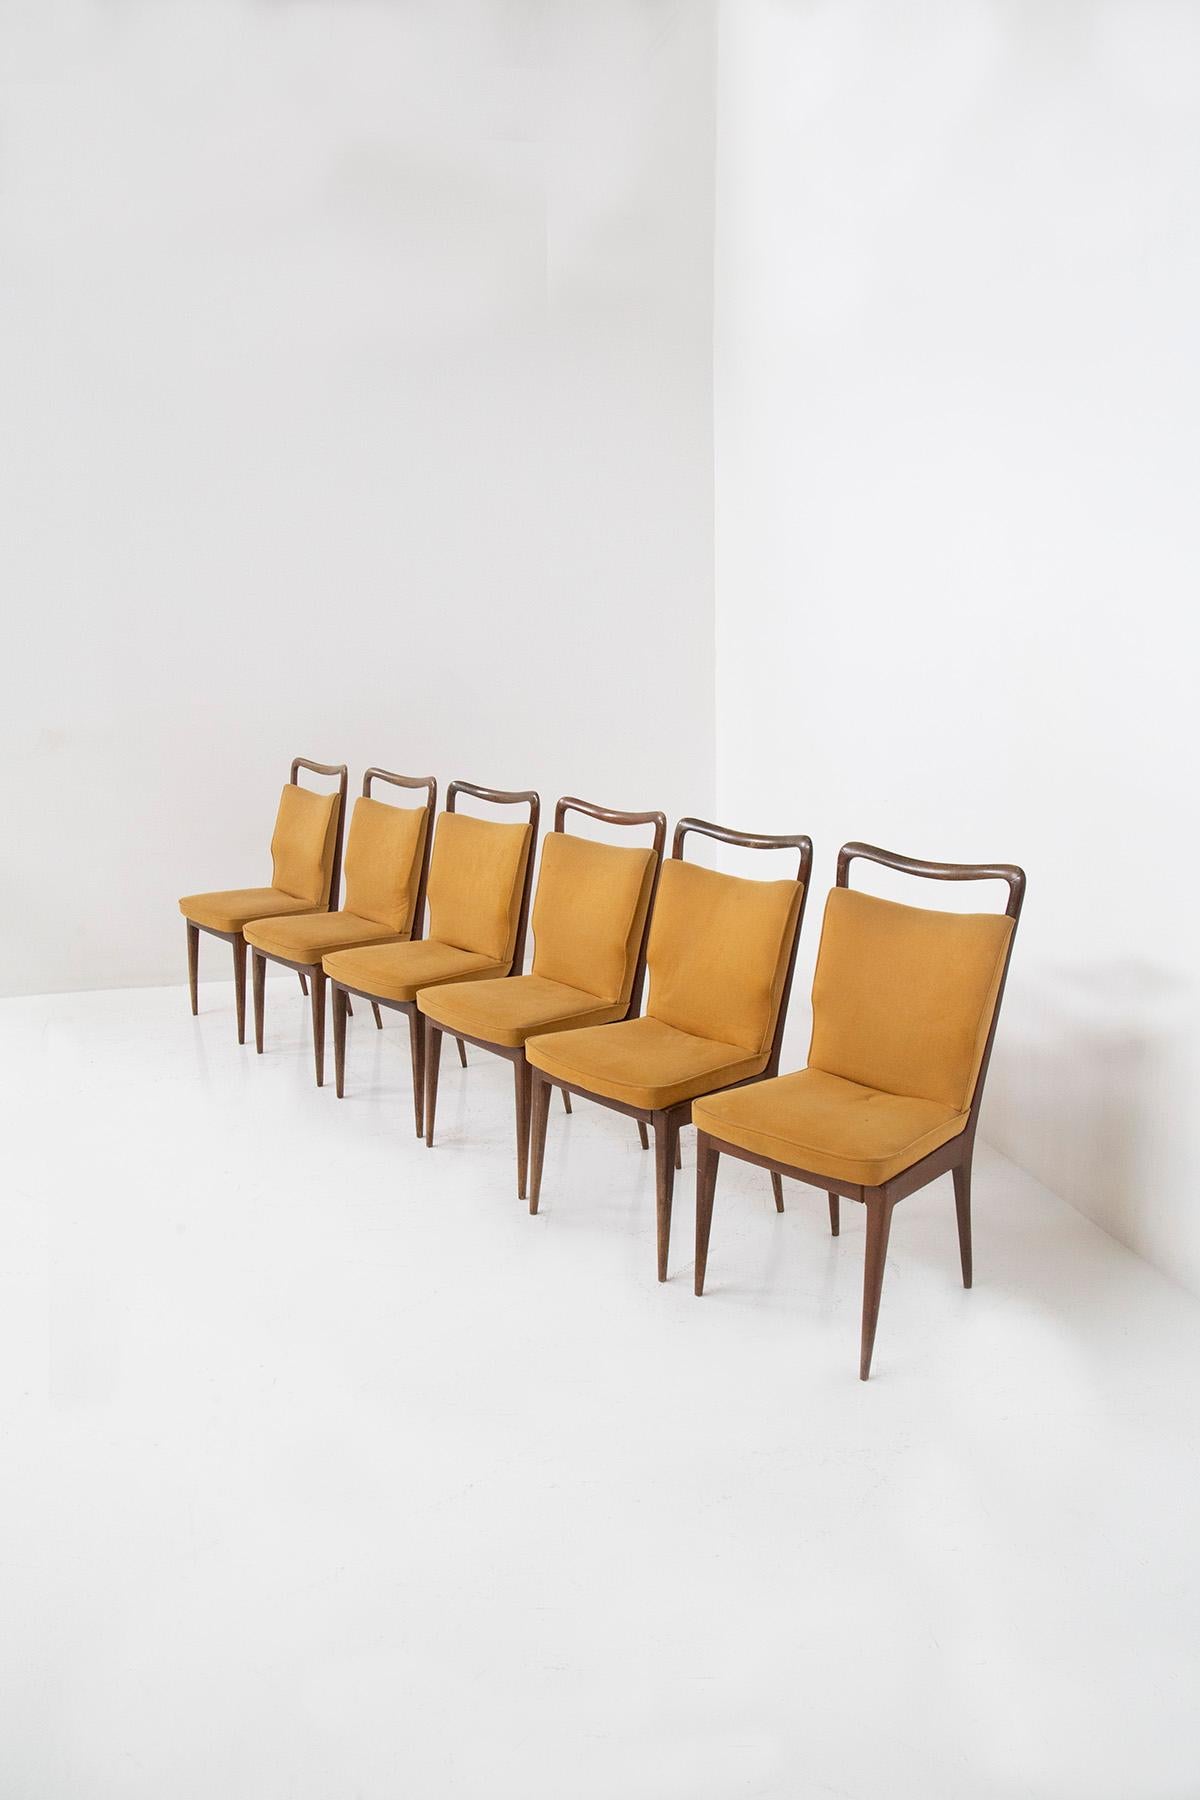 Erlauben Sie mir, Sie in die bezaubernde Welt der italienischen Stühle aus den 1950er Jahren zu entführen, die von der geschätzten Manufaktur ISA BERGAMO hergestellt wurden. Diese Stühle strahlen einen zeitlosen Charme aus, der die Essenz von